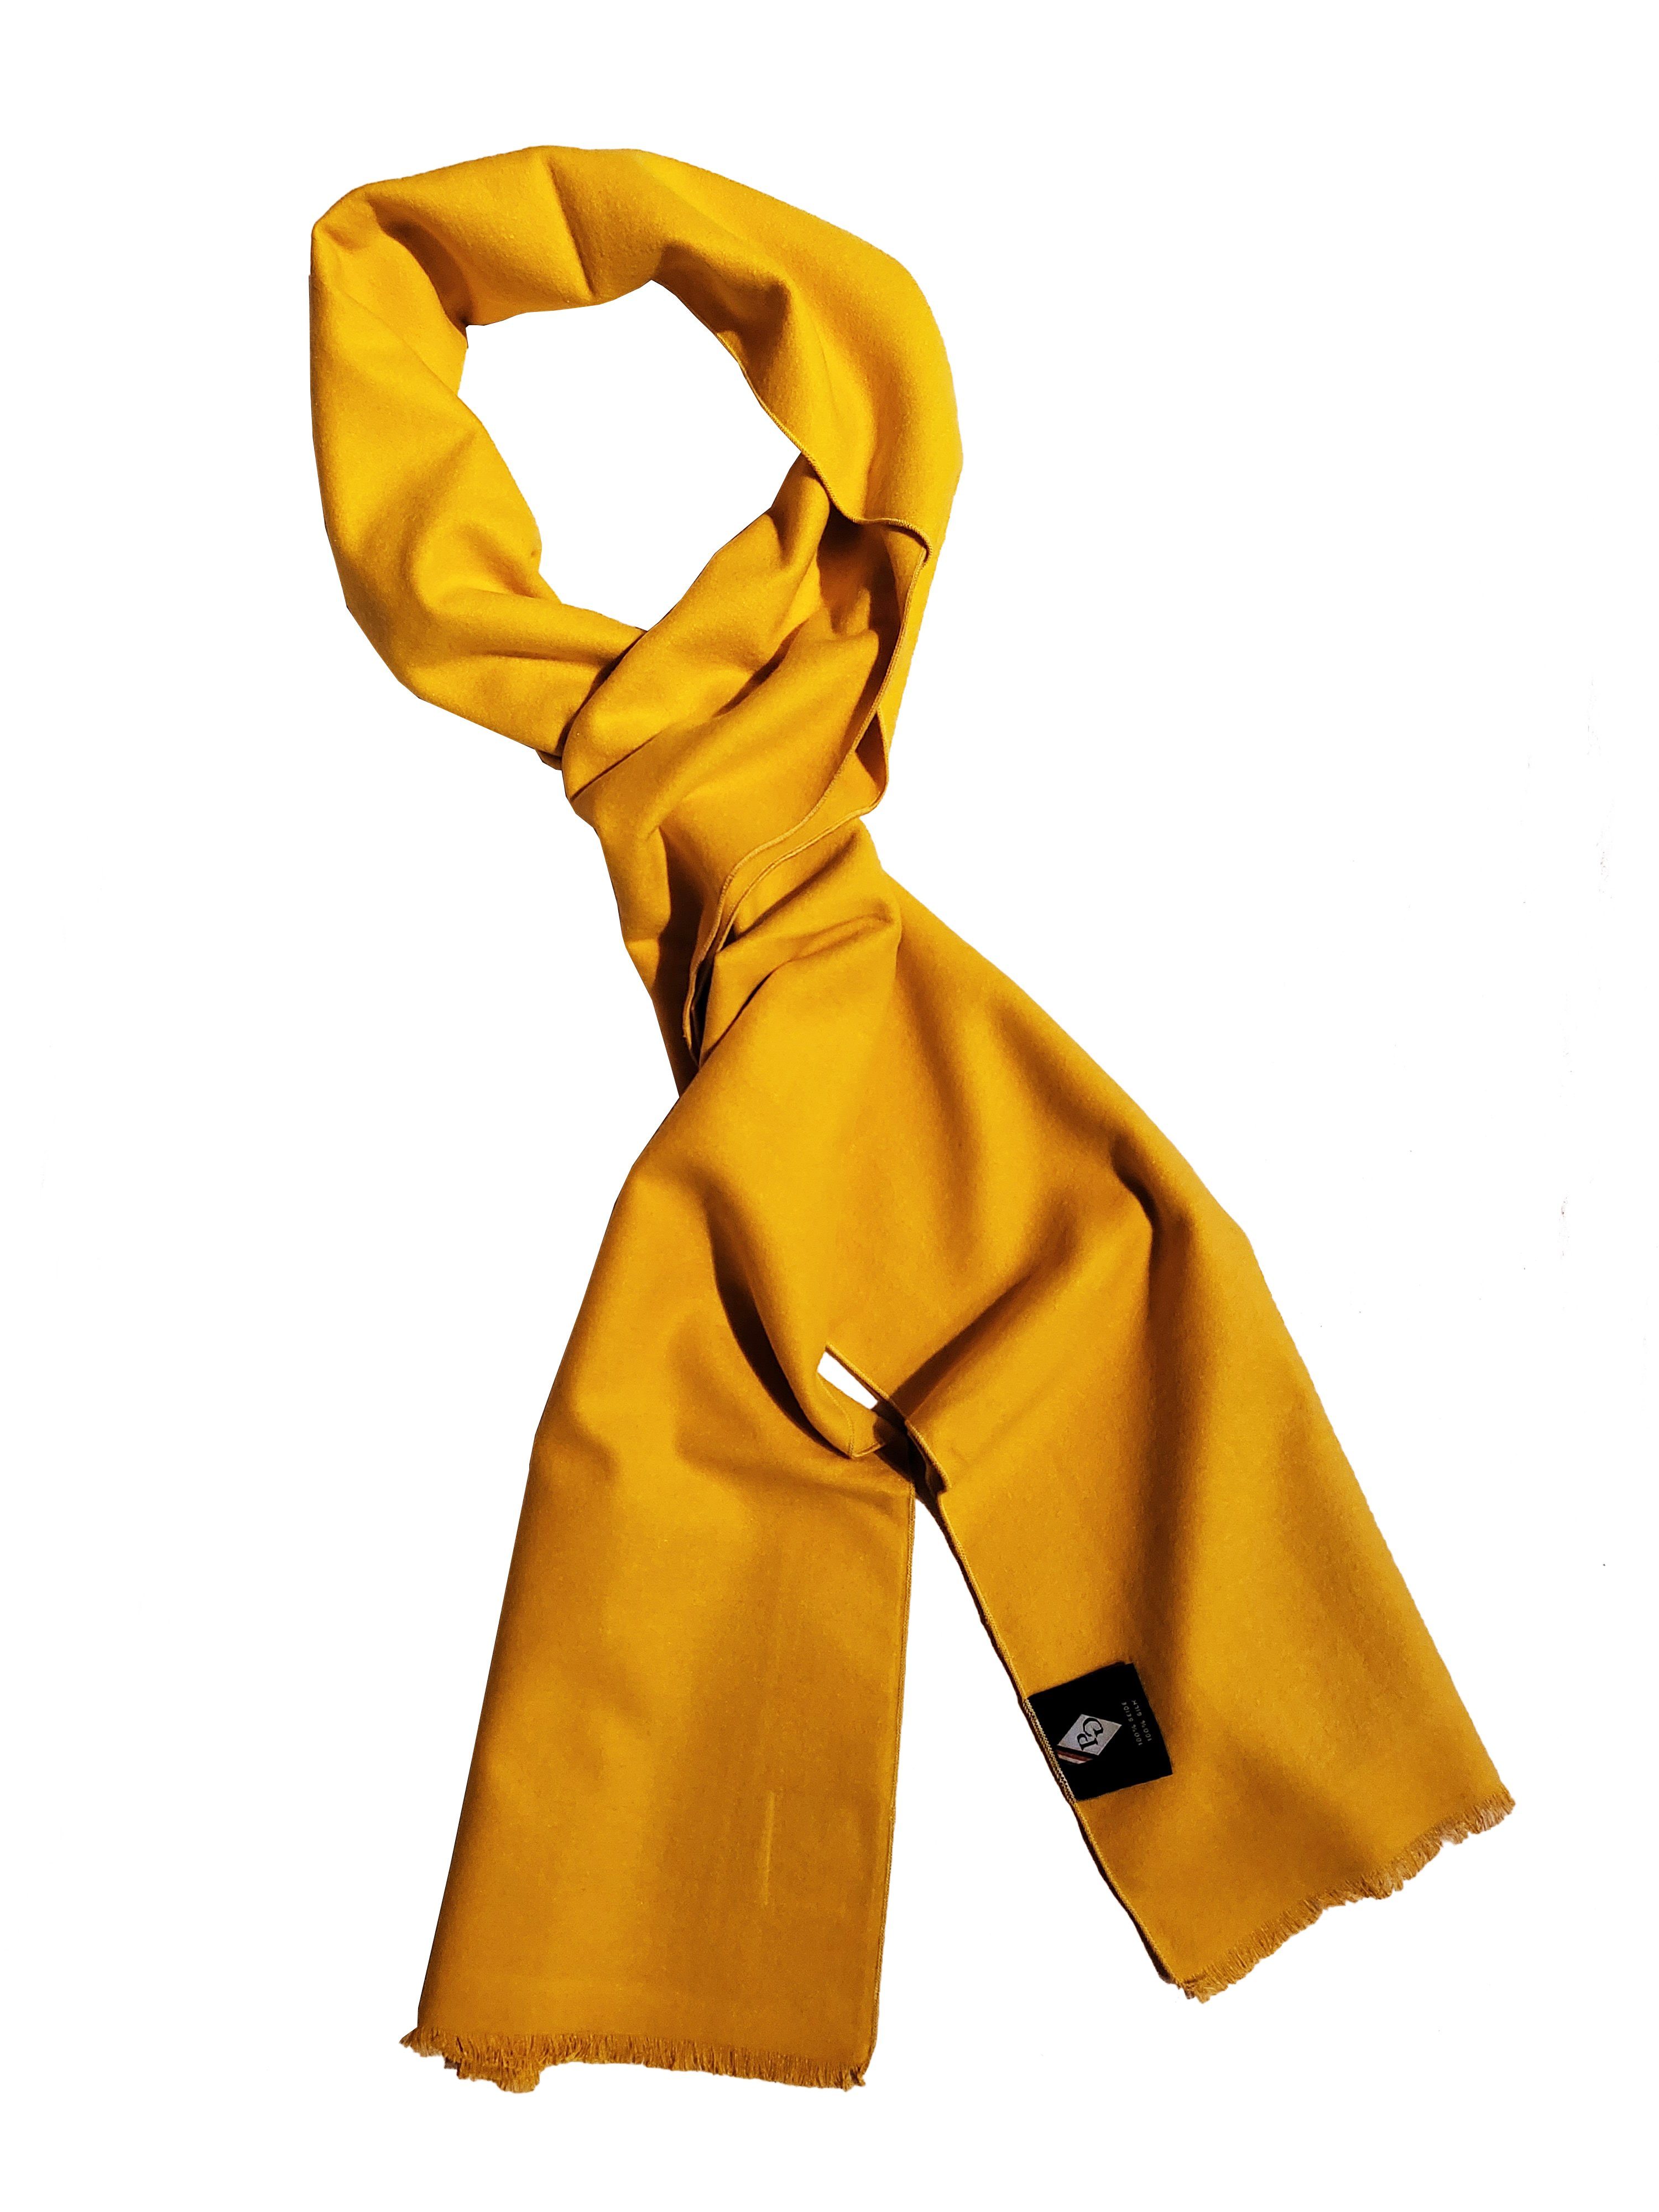 Posh Gear Seidenschal gelb Setaforte, Seide 100% aus Seiden Schal